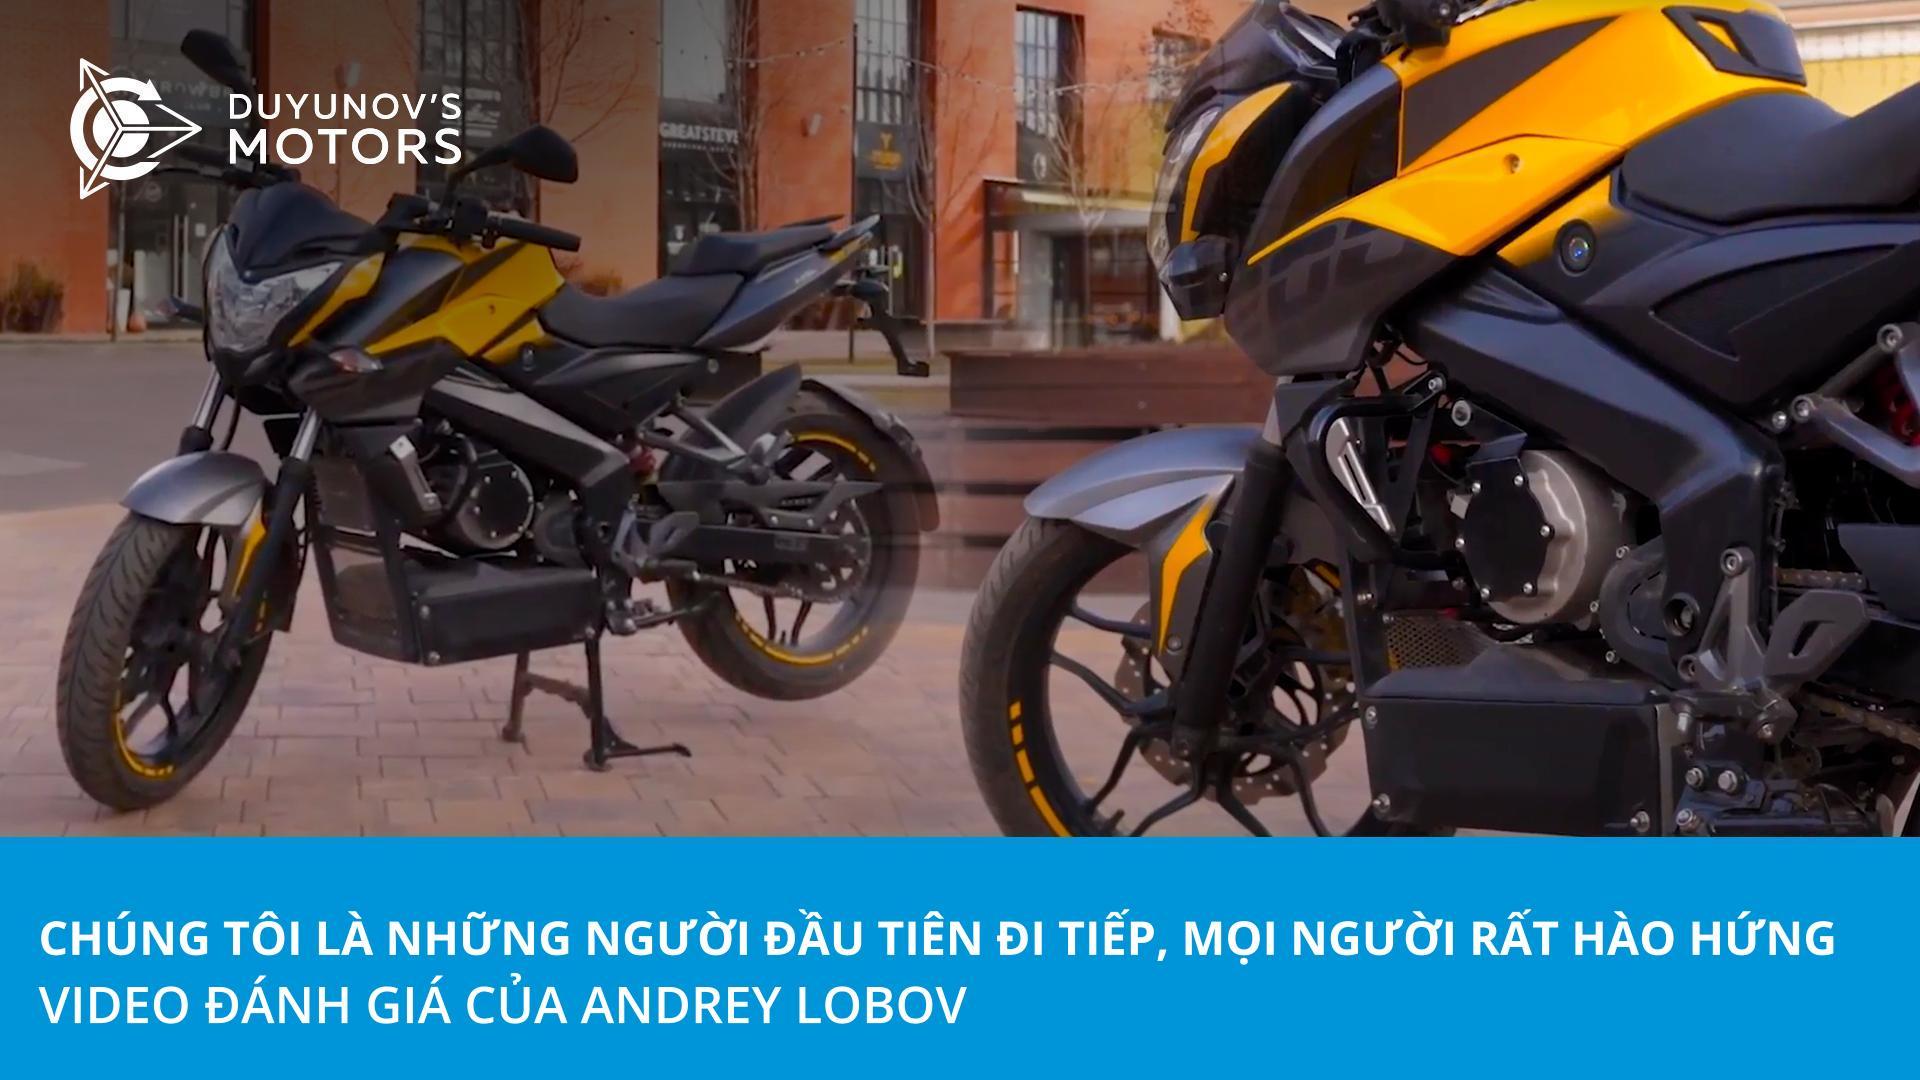 "Chúng tôi là những người đầu tiên đi tiếp, mọi người rất hào hứng!" | Video đánh giá của Andrey Lobov